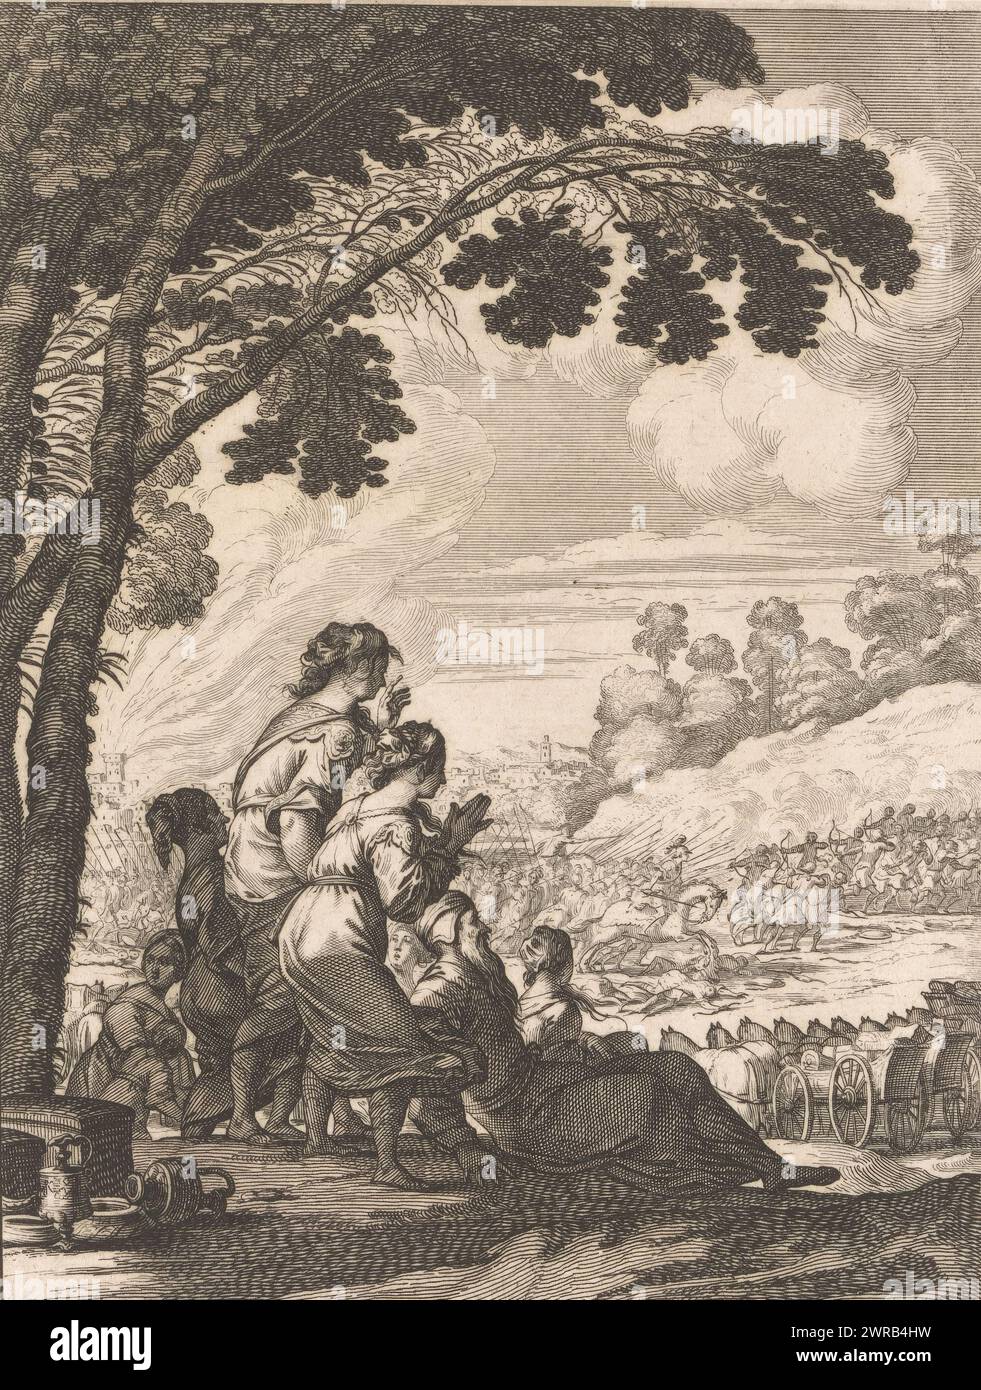 Un gruppo di donne e un vecchio guardano la battaglia tra Palamède e i suoi nemici, tipografo: Abraham Bosse, su disegno di: Claude Vignon, editore: Matthieu Guillemot (III), 1639, carta, incisione, incisione, altezza 195 mm x larghezza 147 mm, stampa Foto Stock